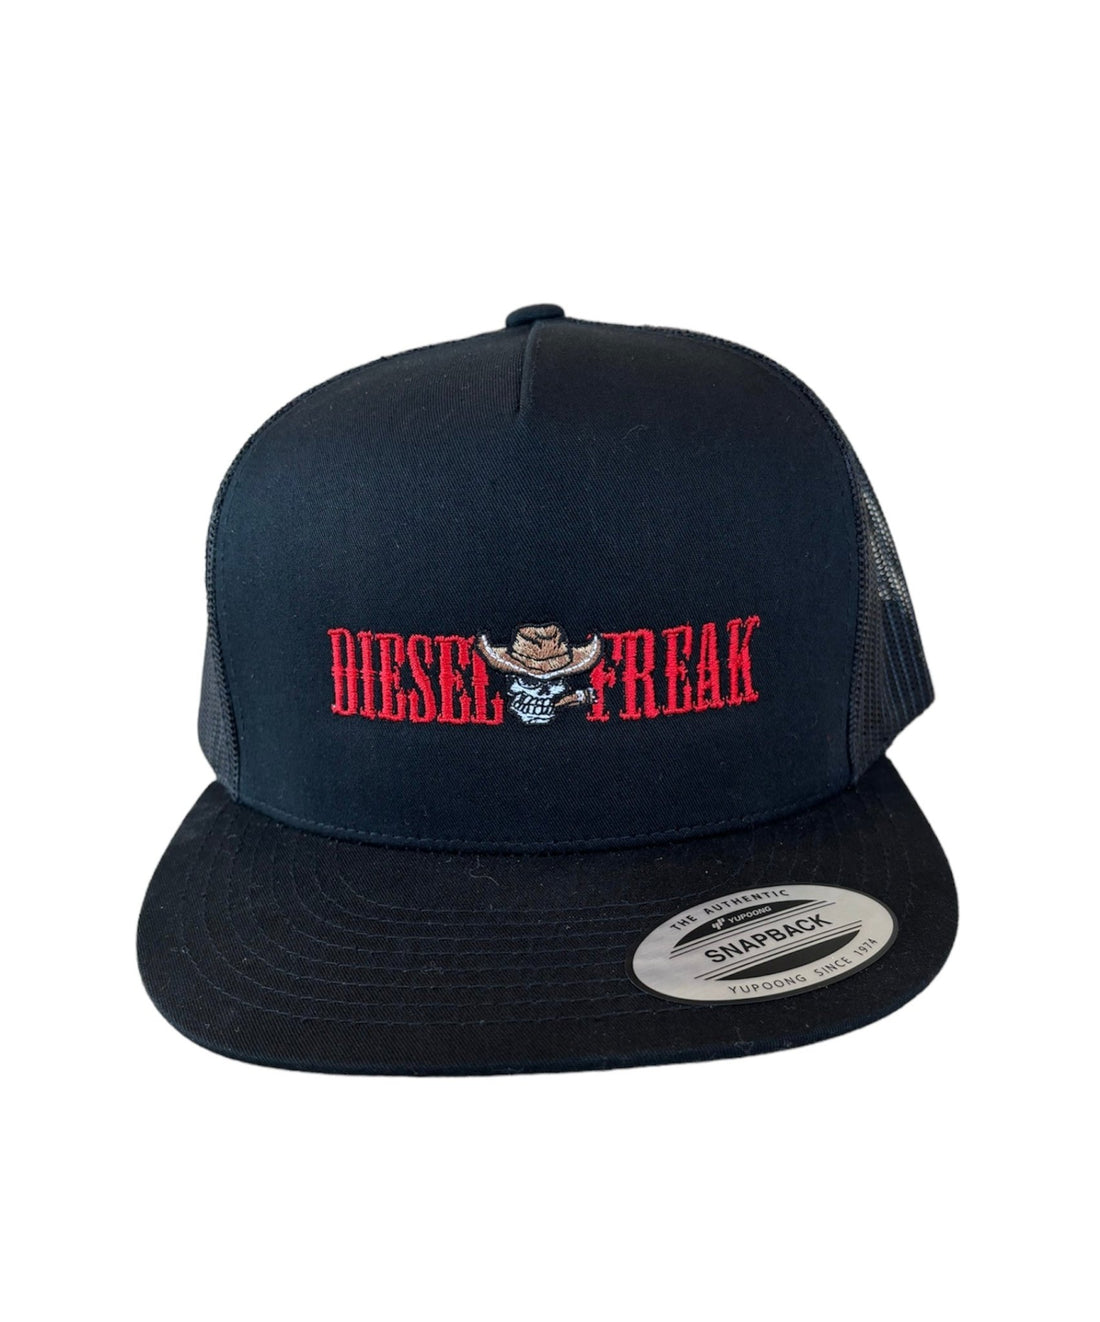 Wanted Diesel Freak Snapback Hat - Red - Diesel Freak